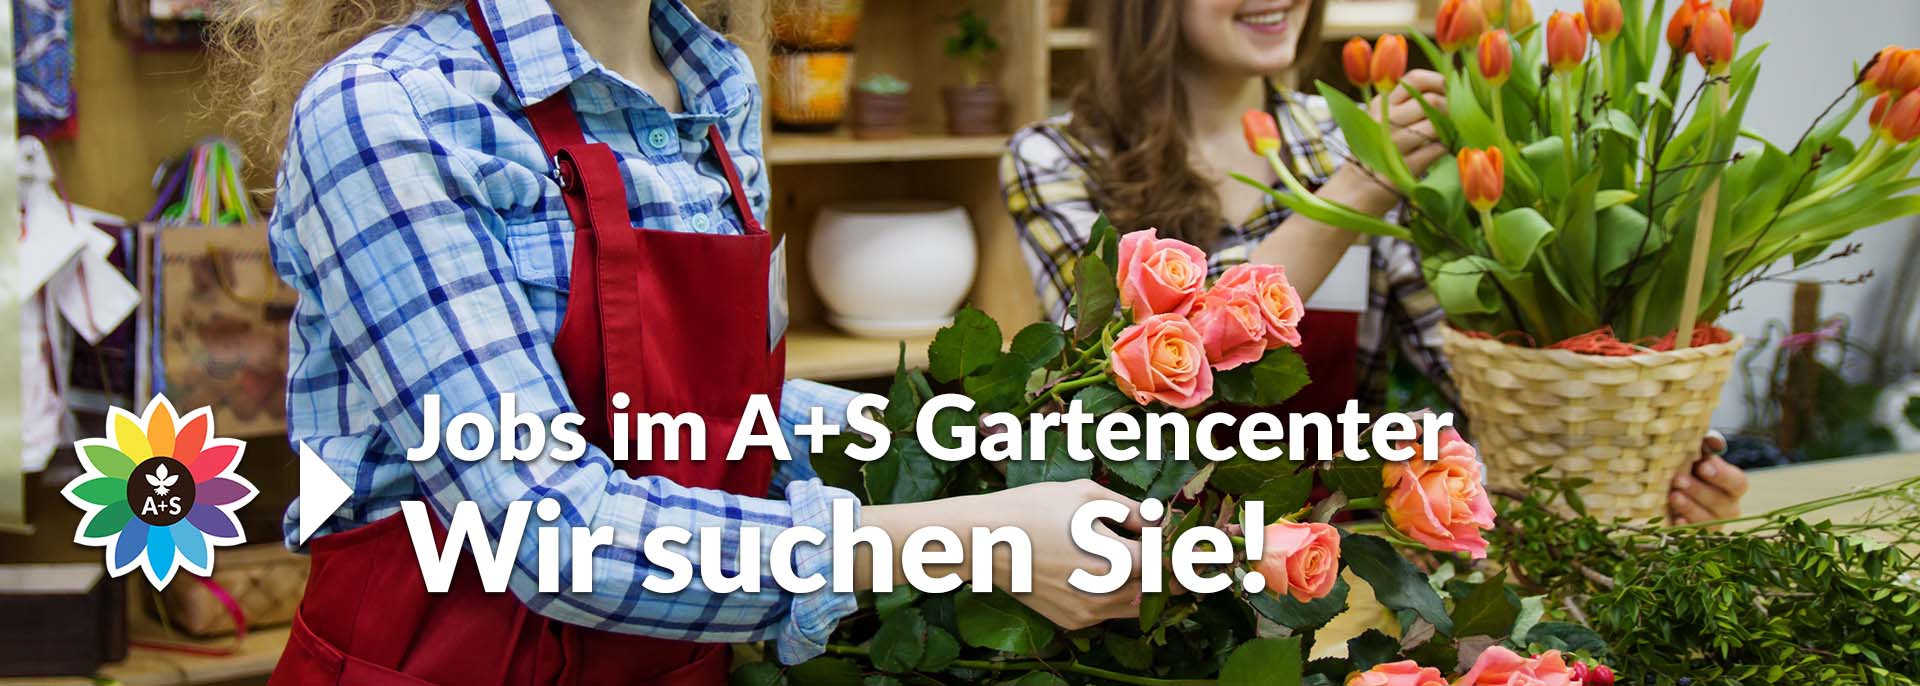 Zu den Stellenangeboten des Ahrens+Sieberz Gartencenters